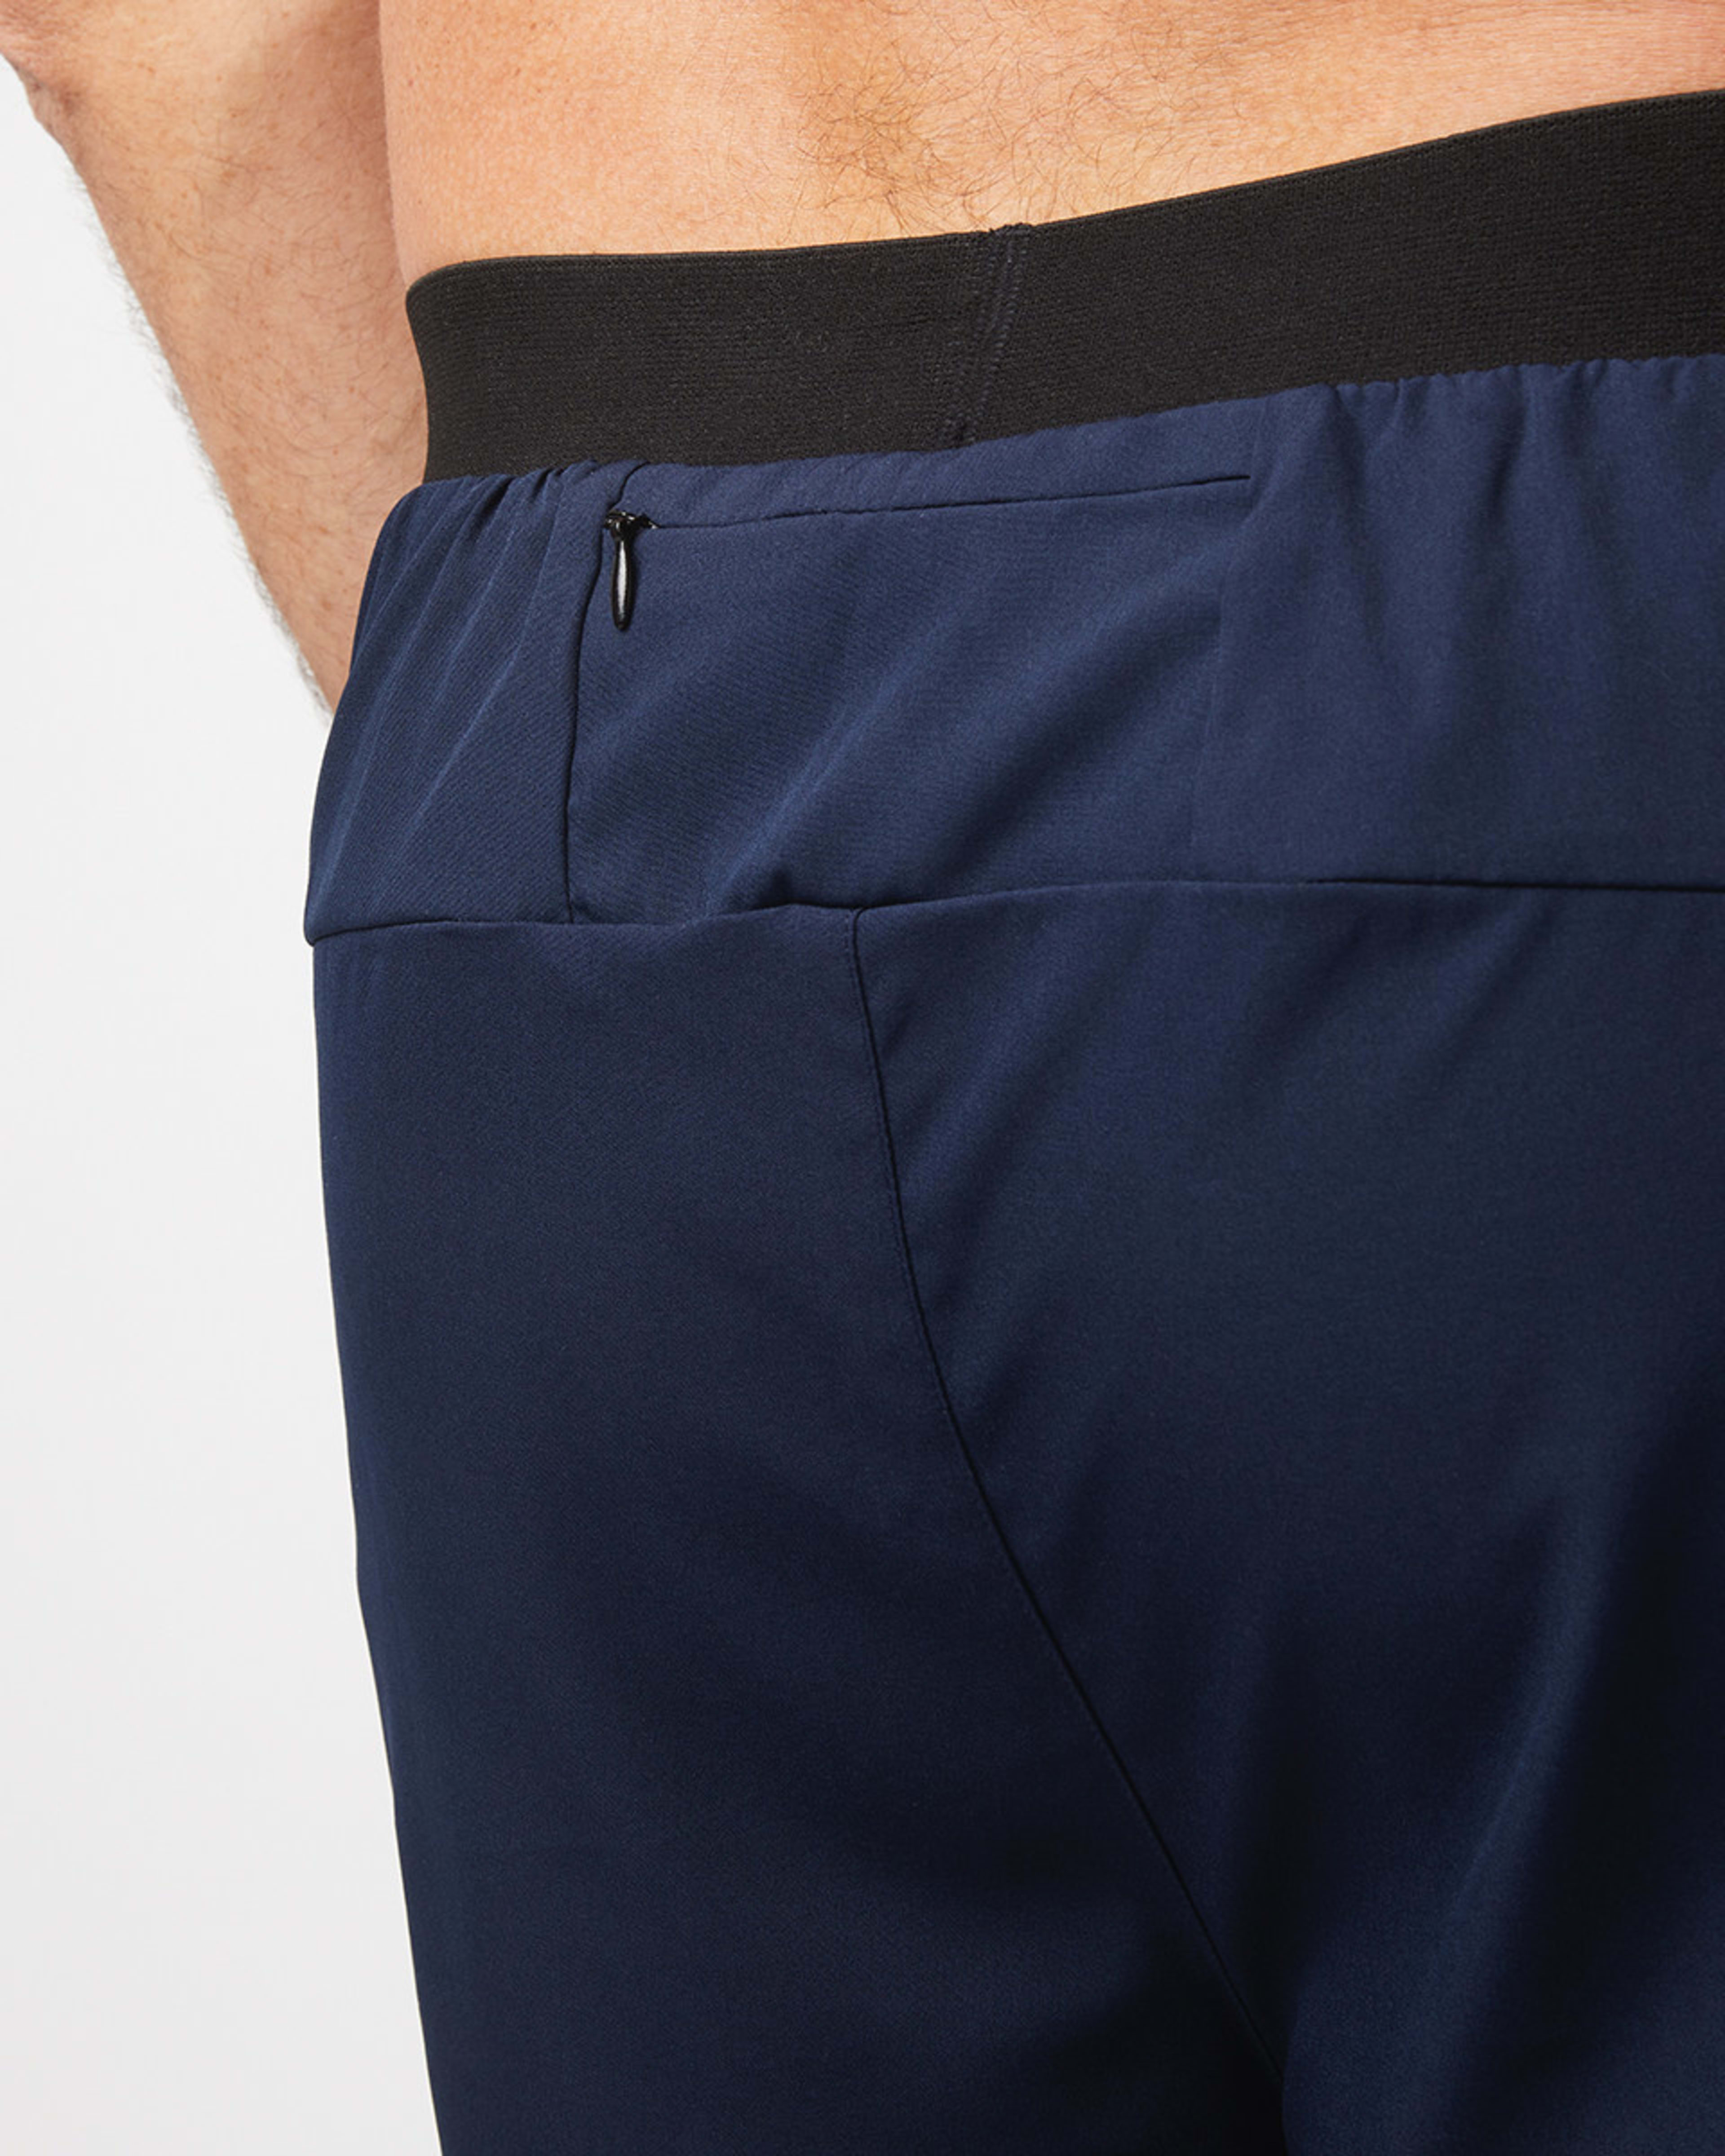 Active Mens Dual Layer Shorts - Kmart